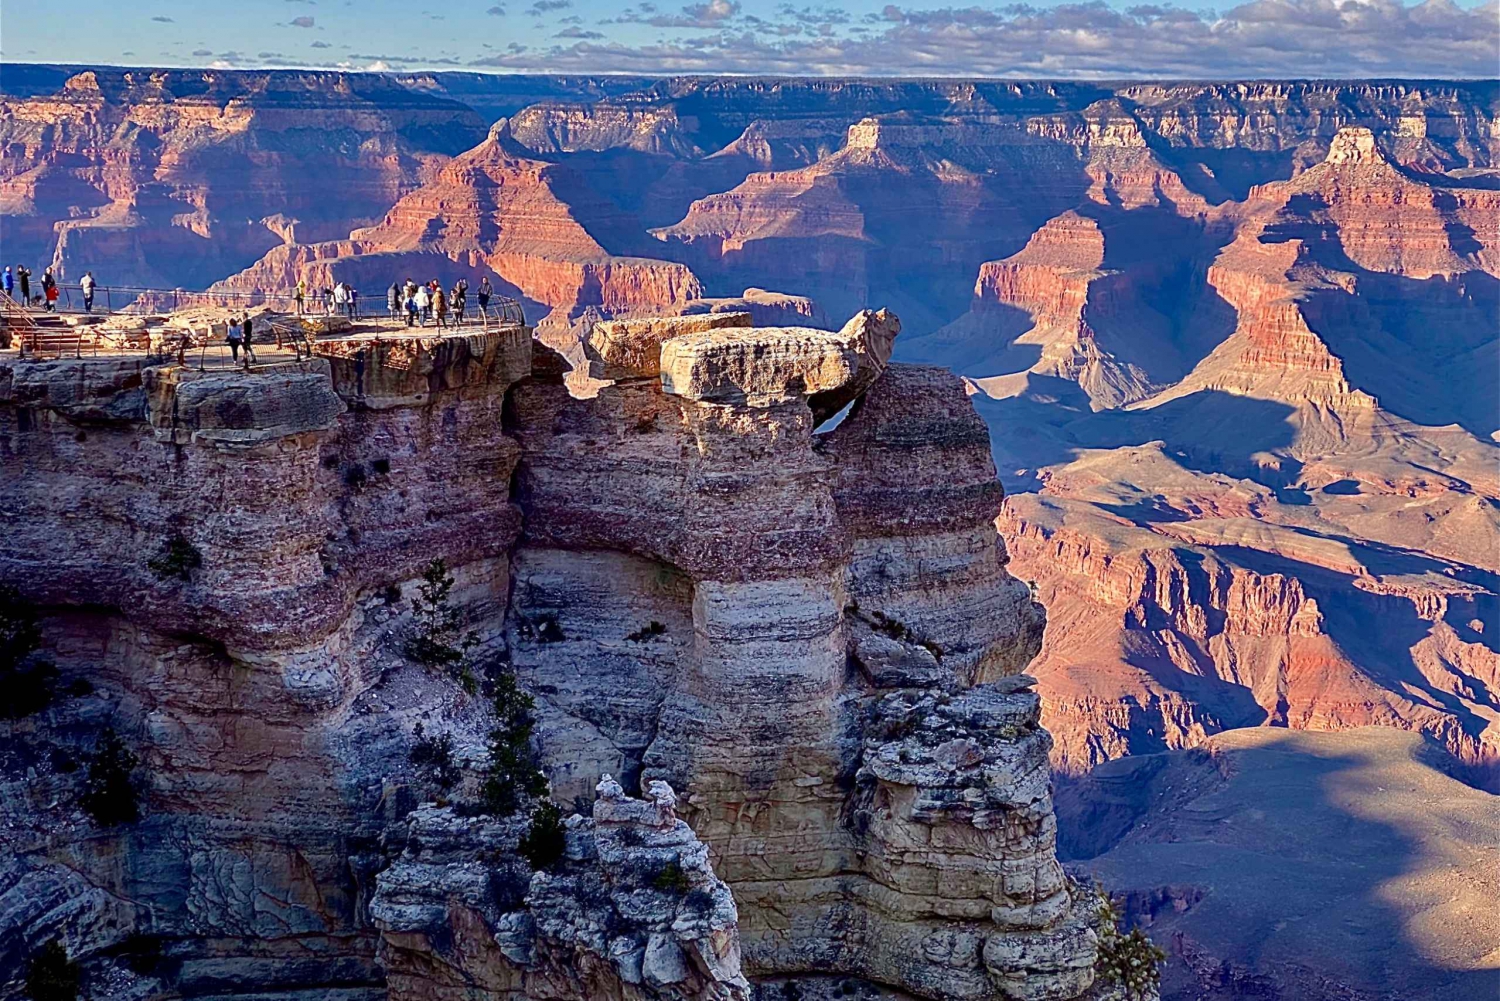 Parque Nacional do Grand Canyon: Tour particular para grupos na Margem Sul